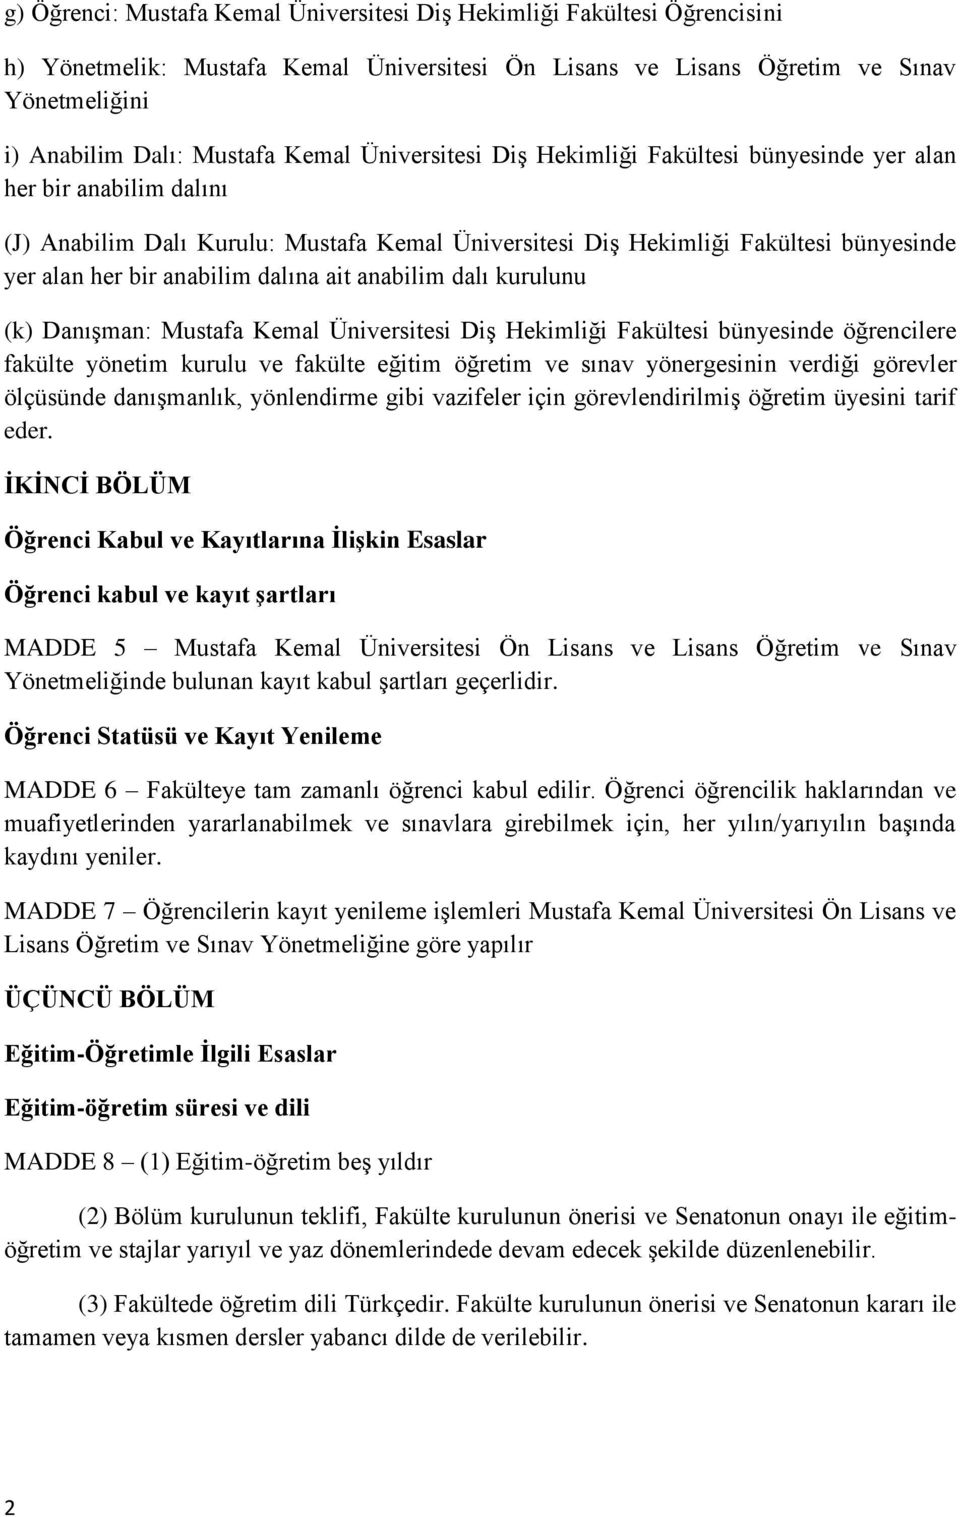 dalına ait anabilim dalı kurulunu (k) Danışman: Mustafa Kemal Üniversitesi Diş Hekimliği Fakültesi bünyesinde öğrencilere fakülte yönetim kurulu ve fakülte eğitim öğretim ve sınav yönergesinin